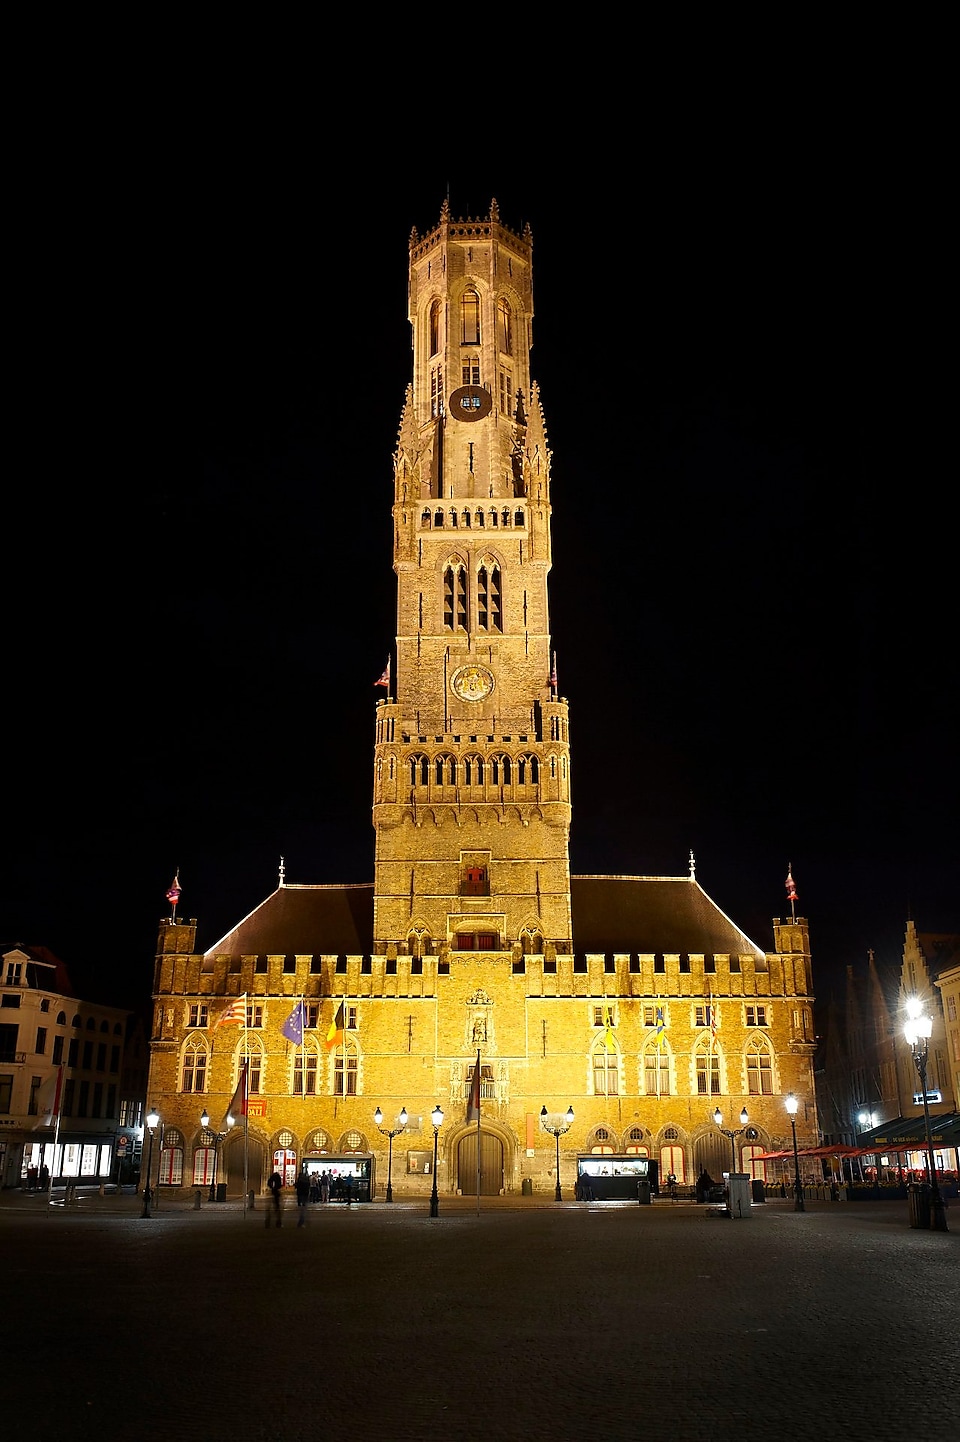 Gece aydınlatılan Bruges katedrali